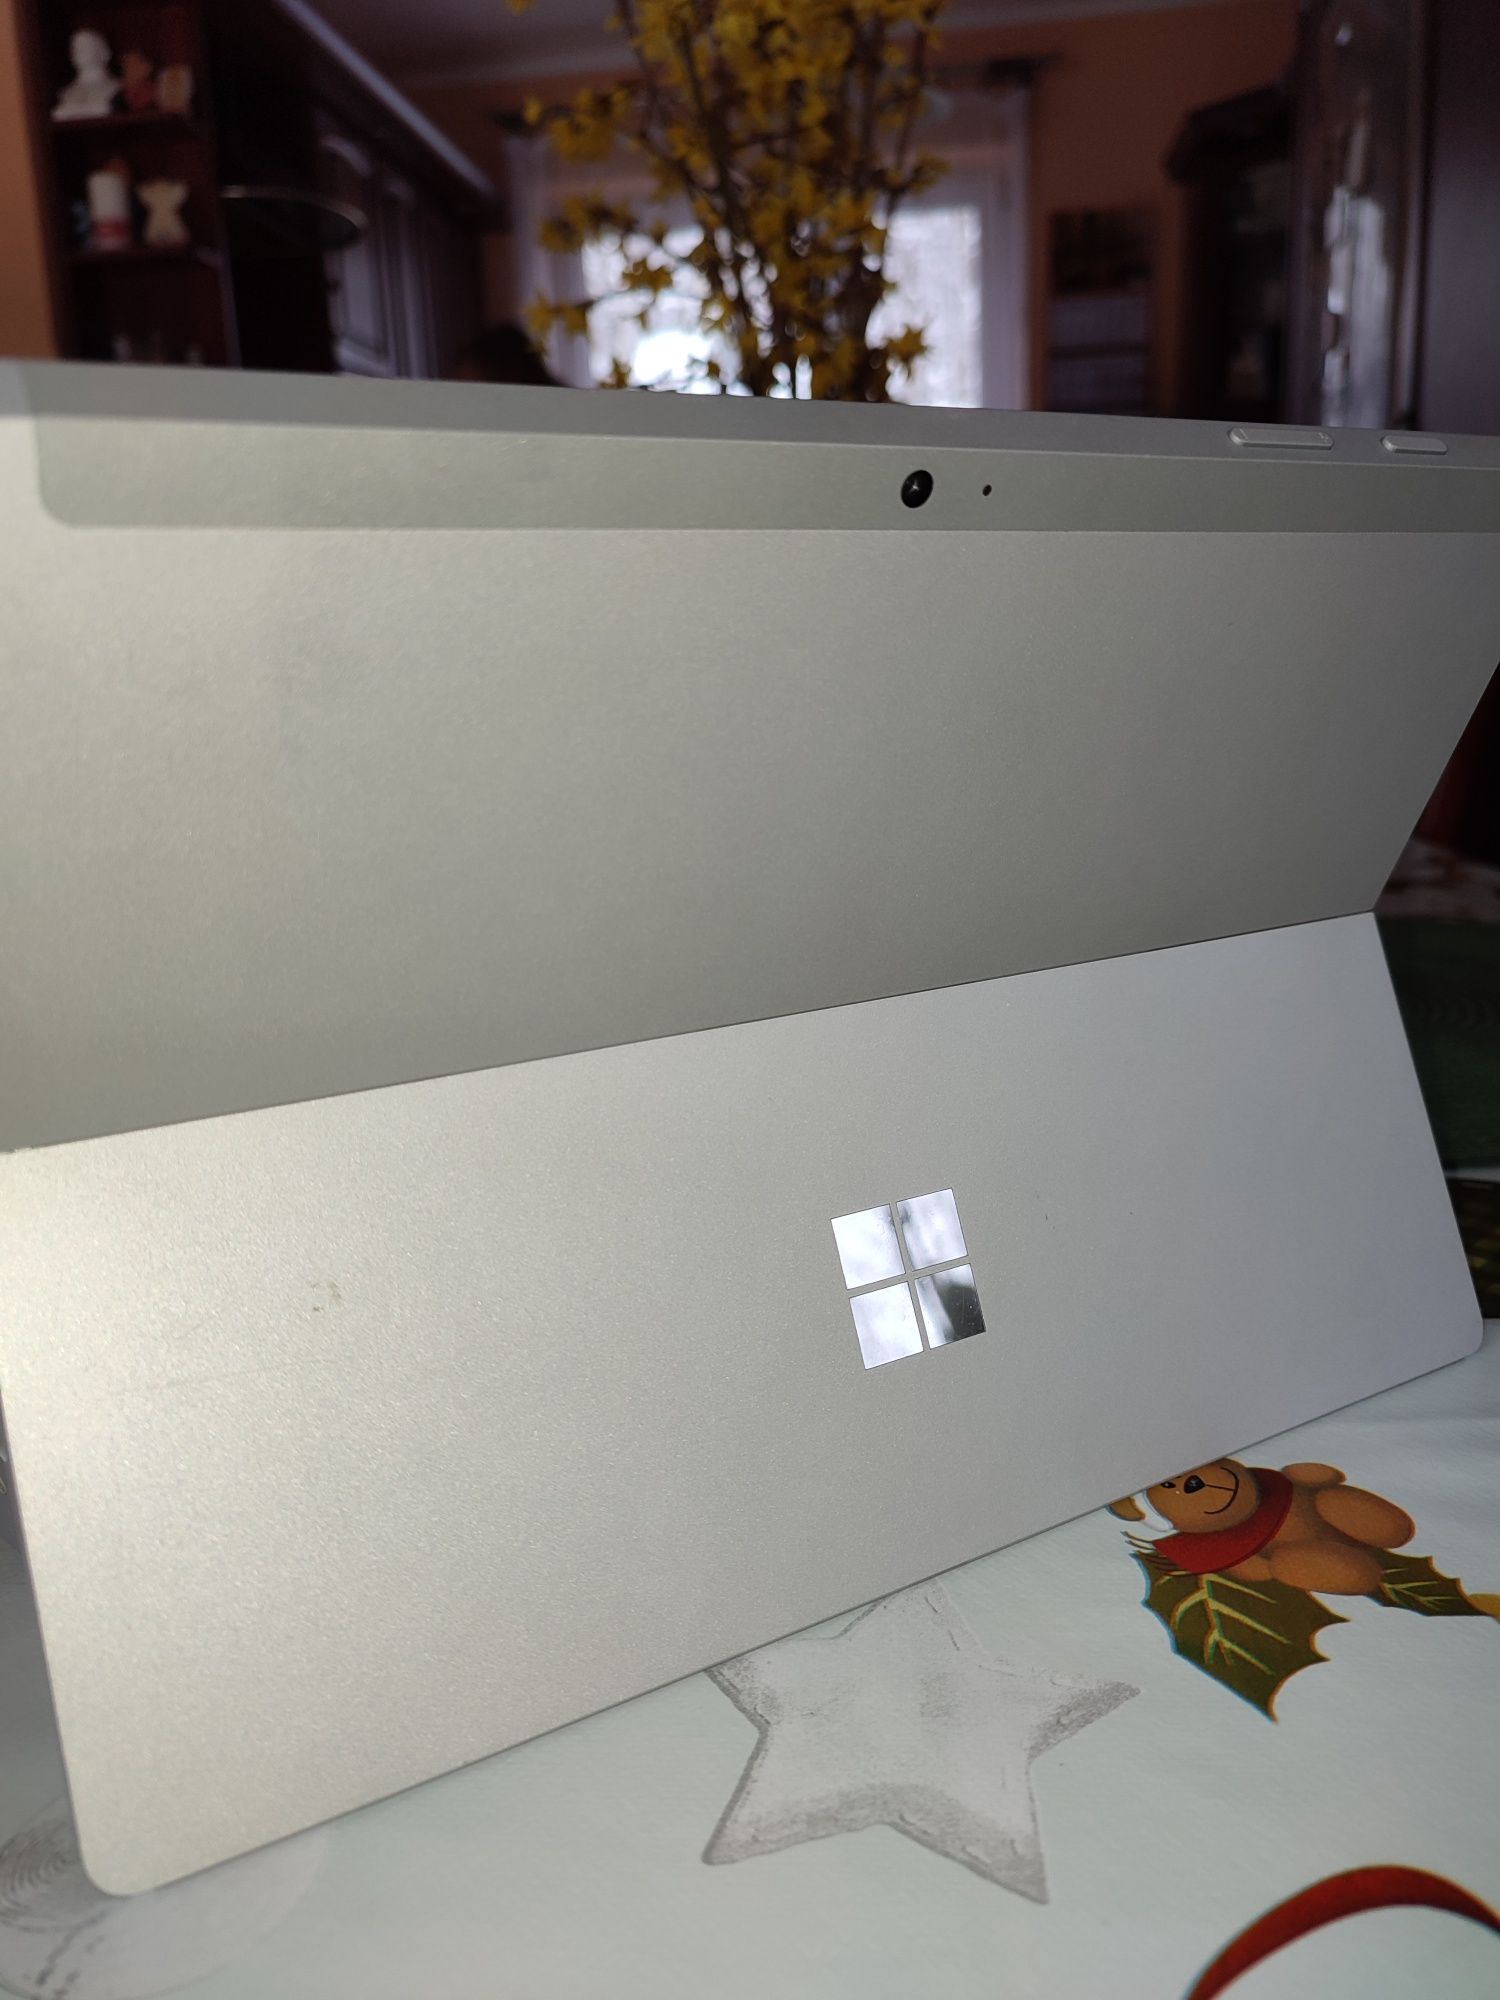 Laptop Microsoft sur face